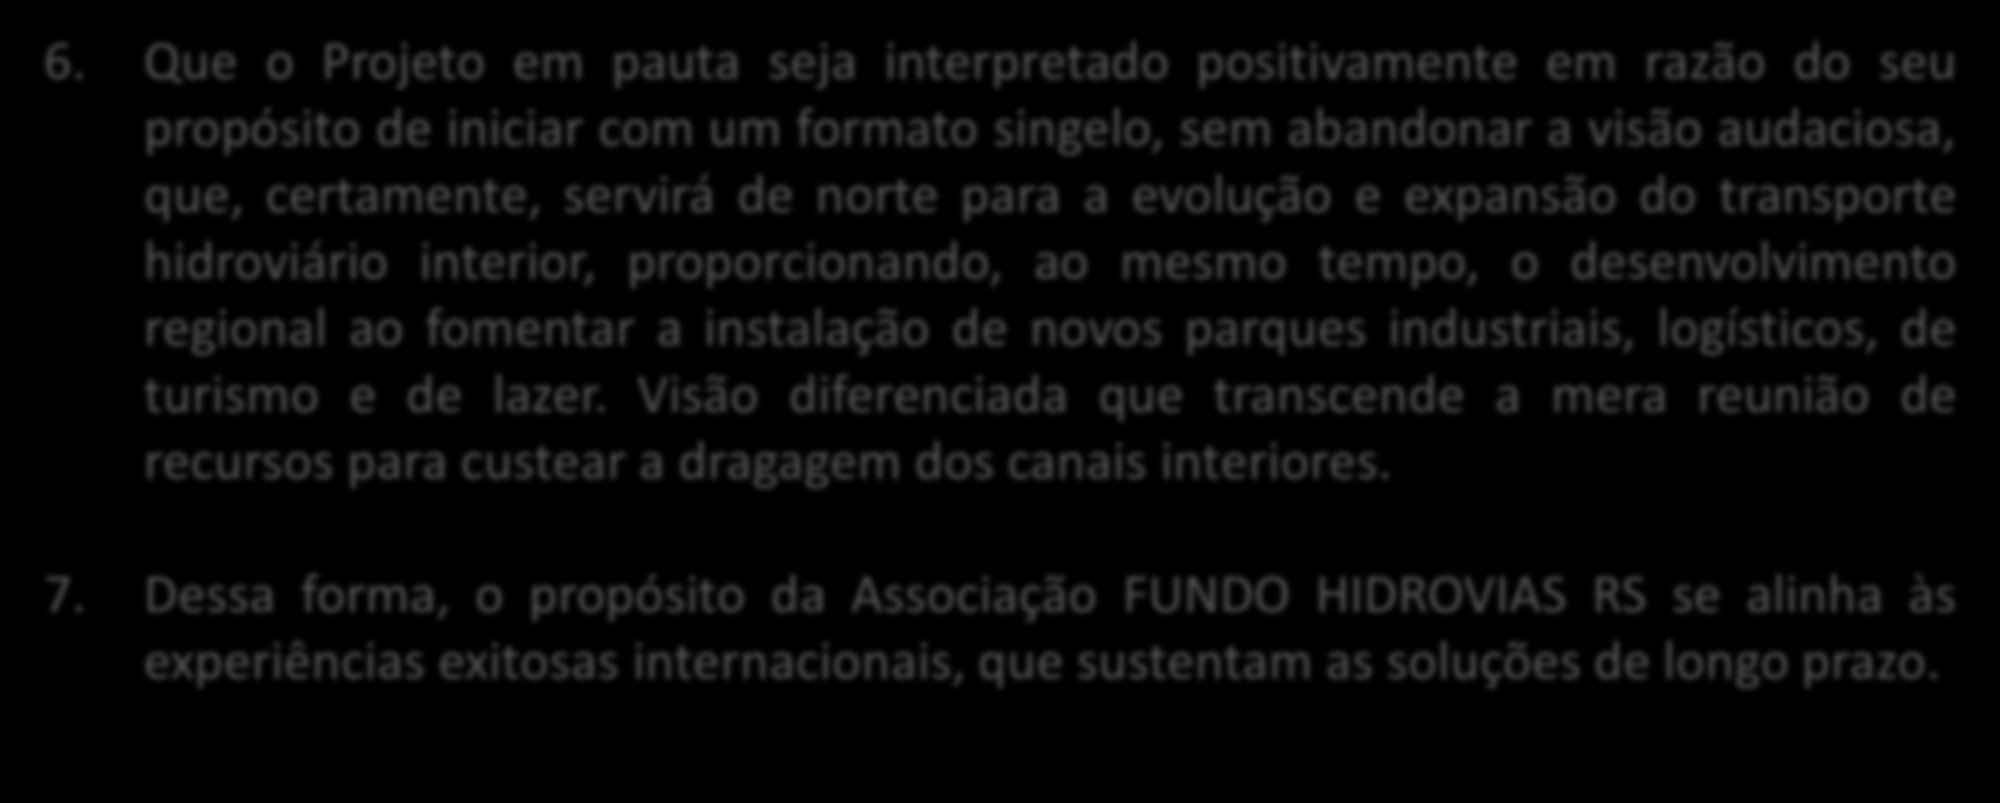 07/12/2016 10 O projeto Fundo Hidrovias RS Proposta 6.